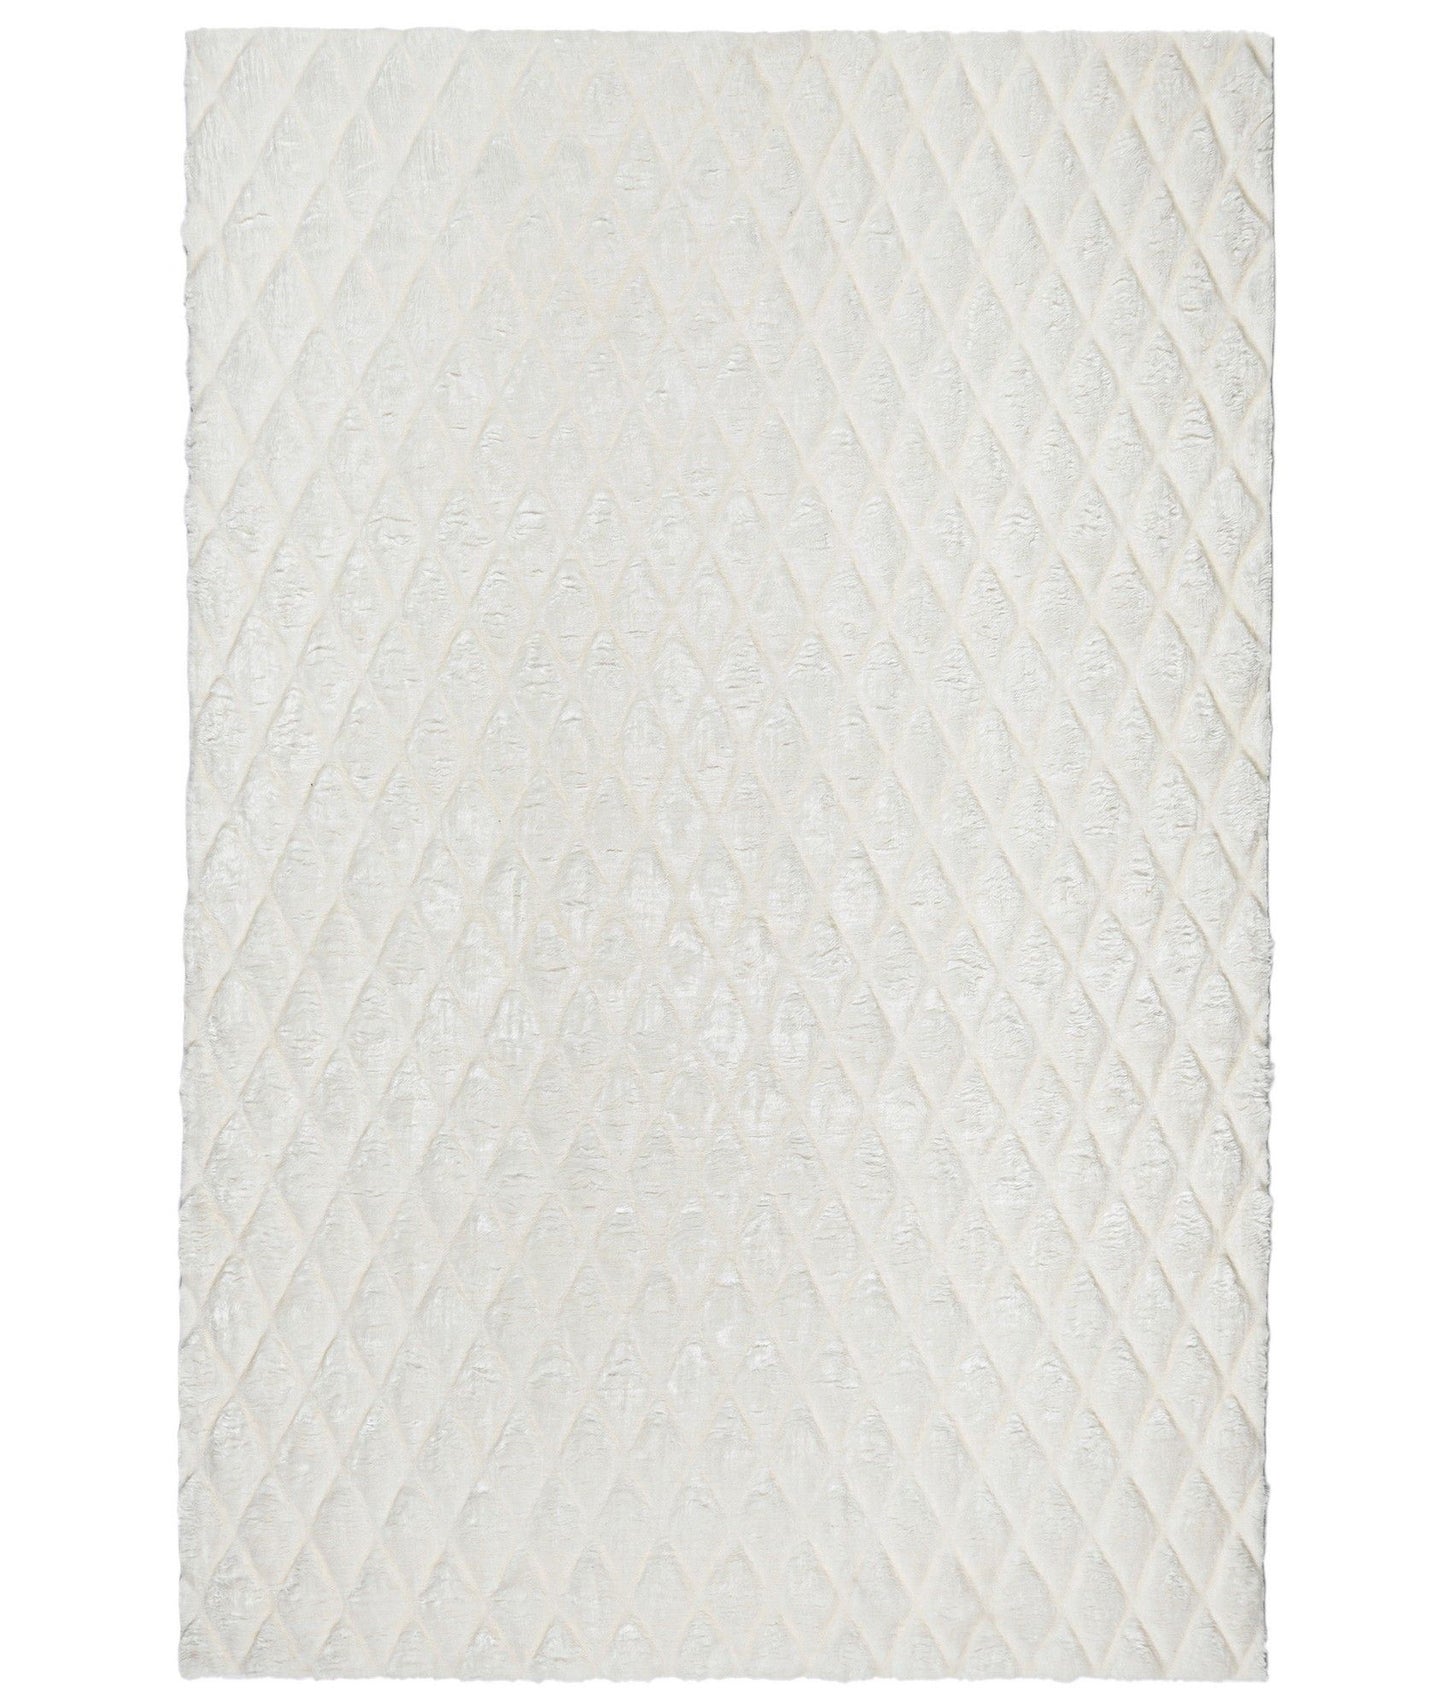 Fåreskindstæppe - hvidt - tæppe (60 x 100)